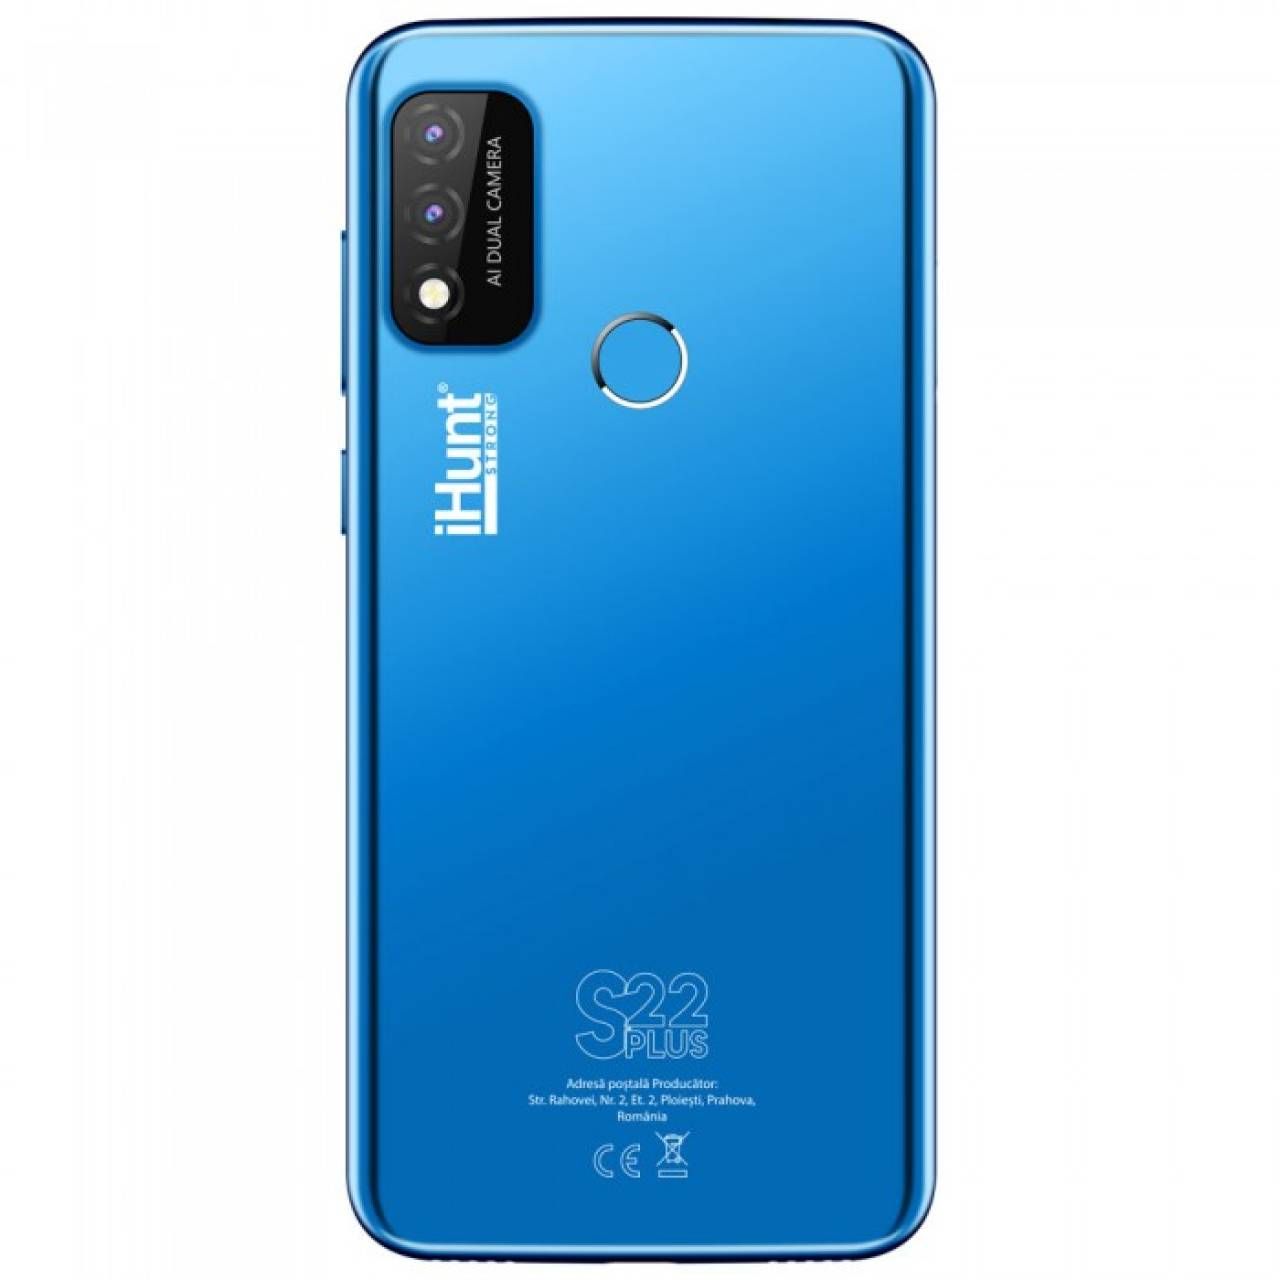 Telefon Mobil iHunt S22 Plus Blue, 4G, 16GB, 2GB RAM, Display 6.1